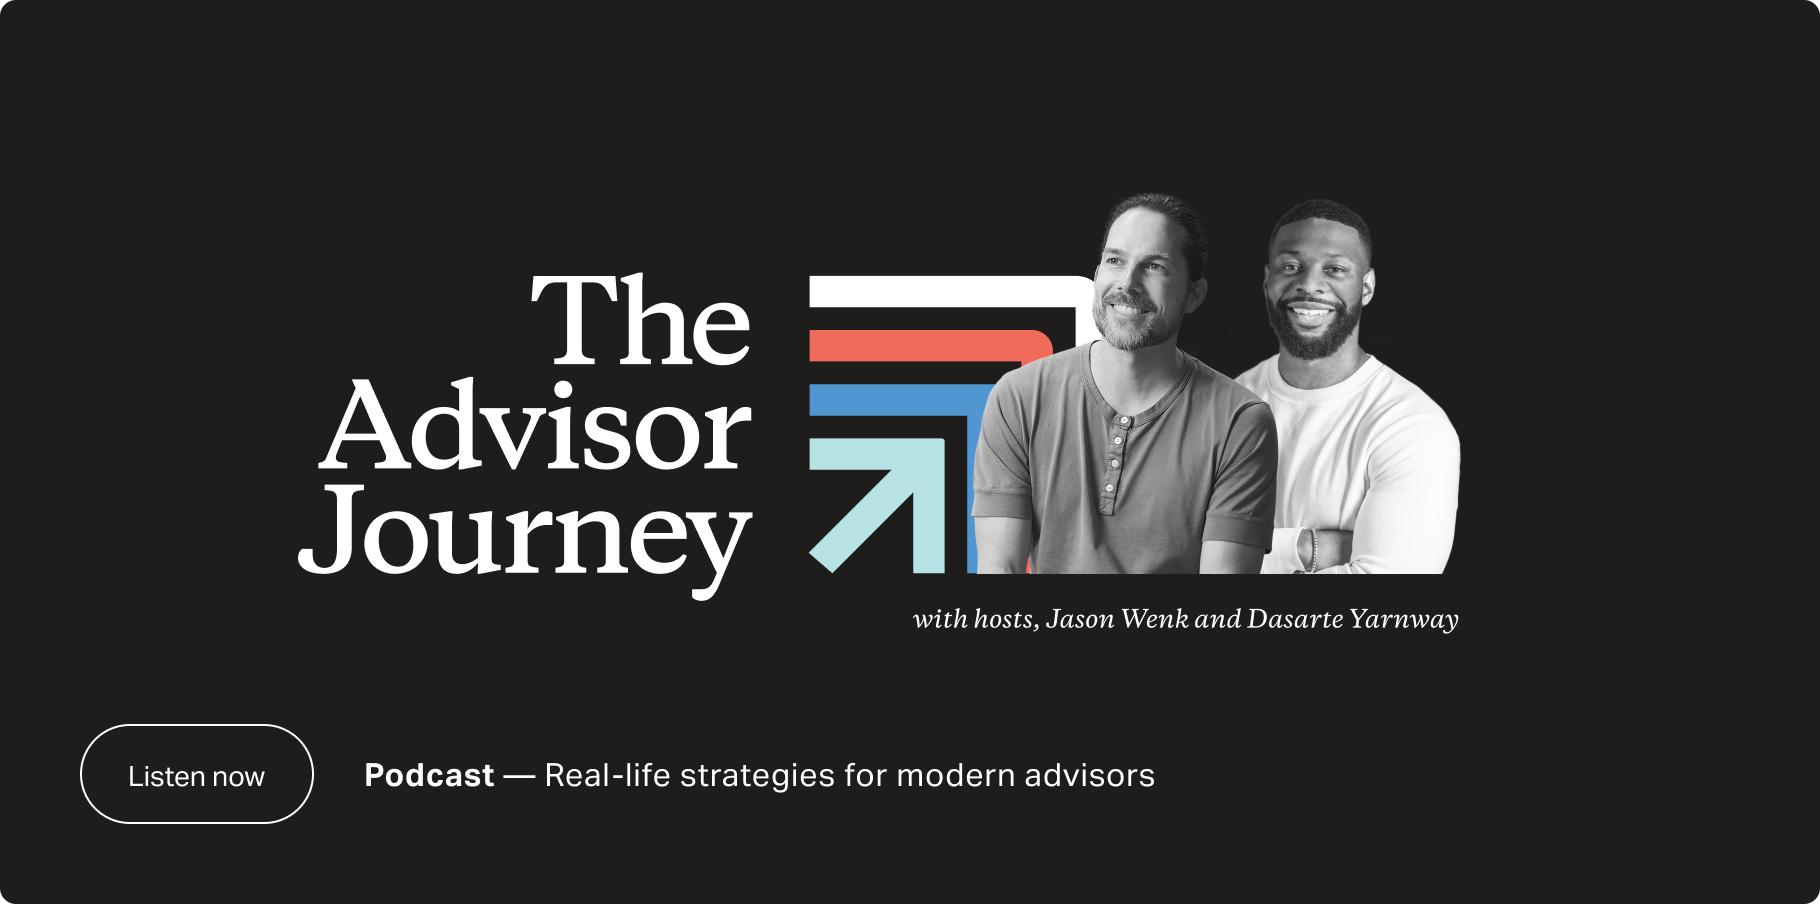 Financial Advisor Podcast: The Advisor Joruney